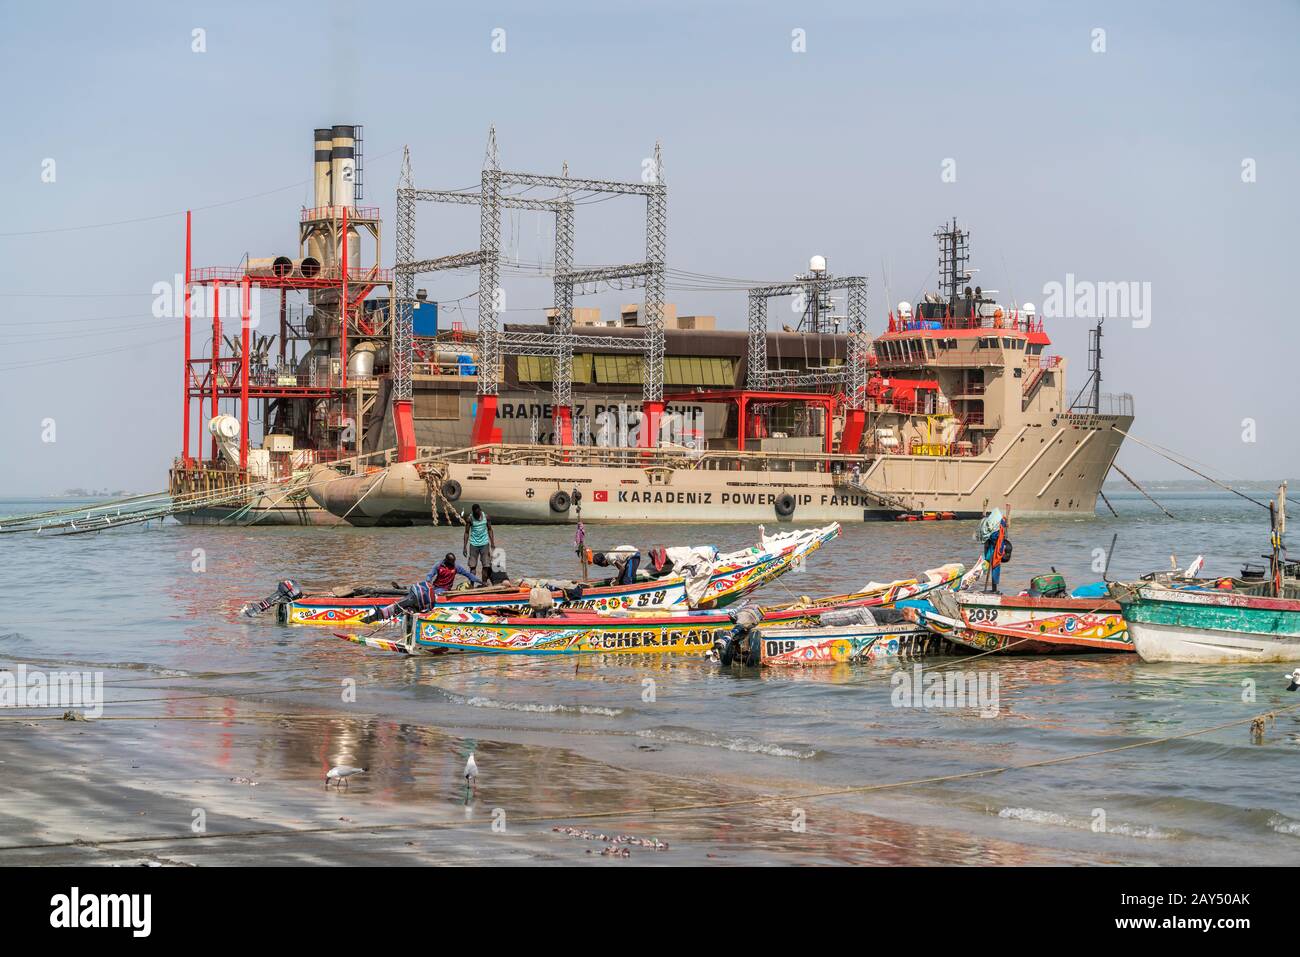 Das schwimmende Kraftwerk Karadeniz Powership Faruk Bey und Fischerboote an der Küste bei Banjul, Gambia, Westafrika  |  Karadeniz Powership Faruk Bey Stock Photo